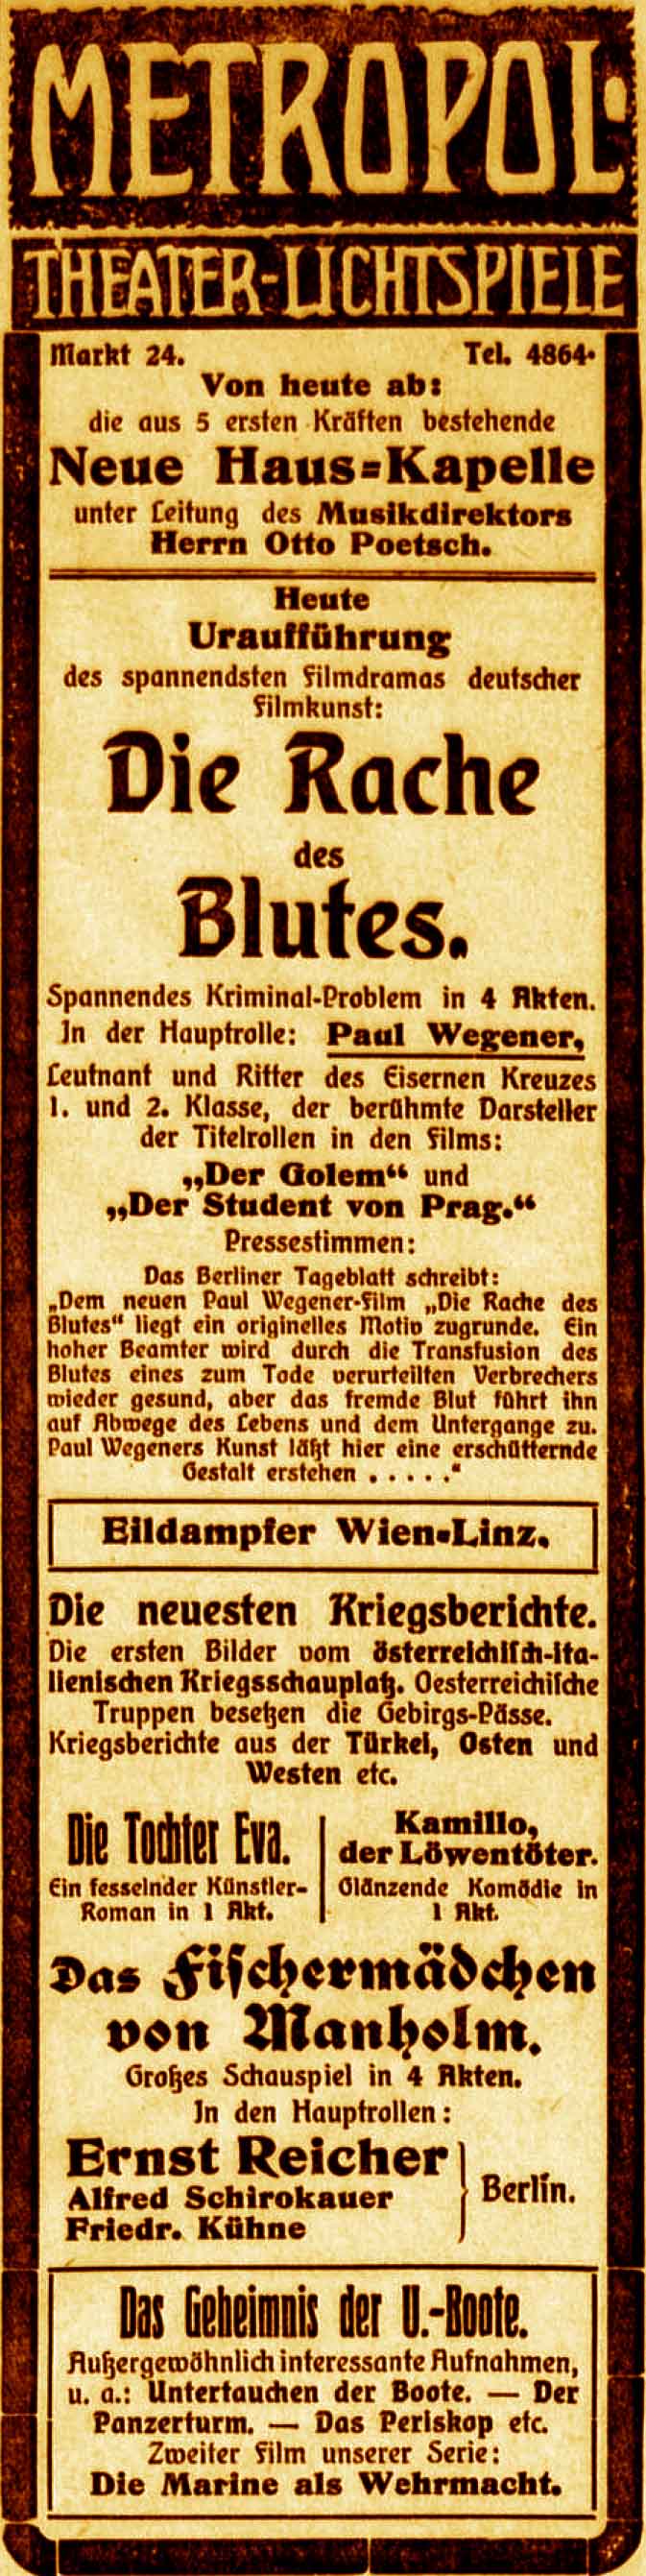 Anzeige im General-Anzeiger vom 3. August 1915